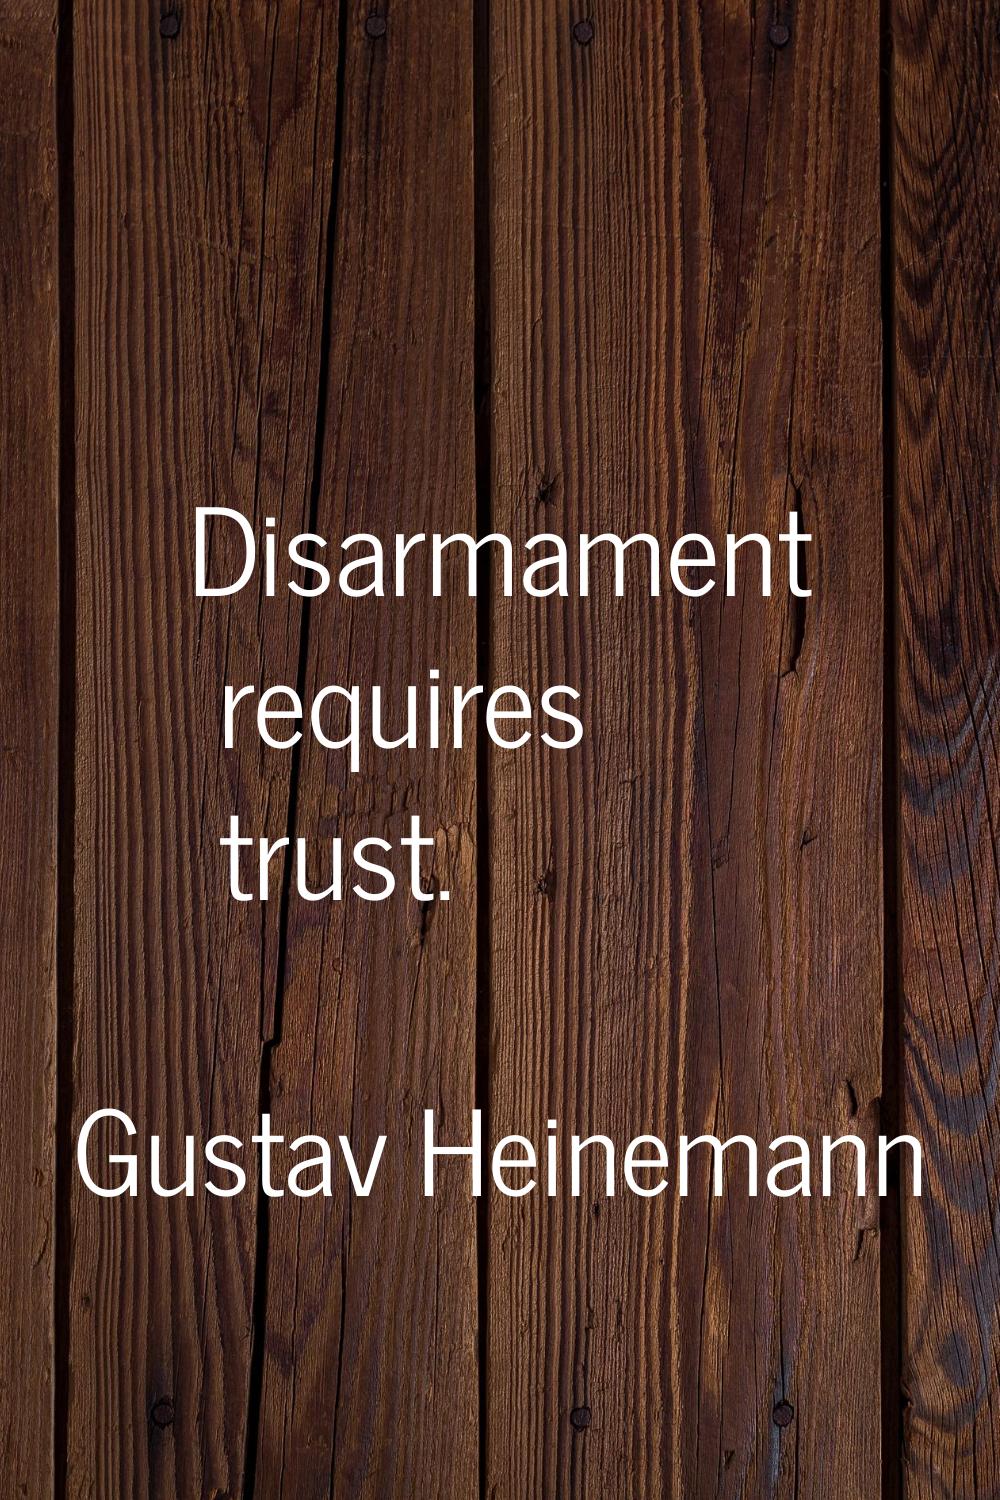 Disarmament requires trust.